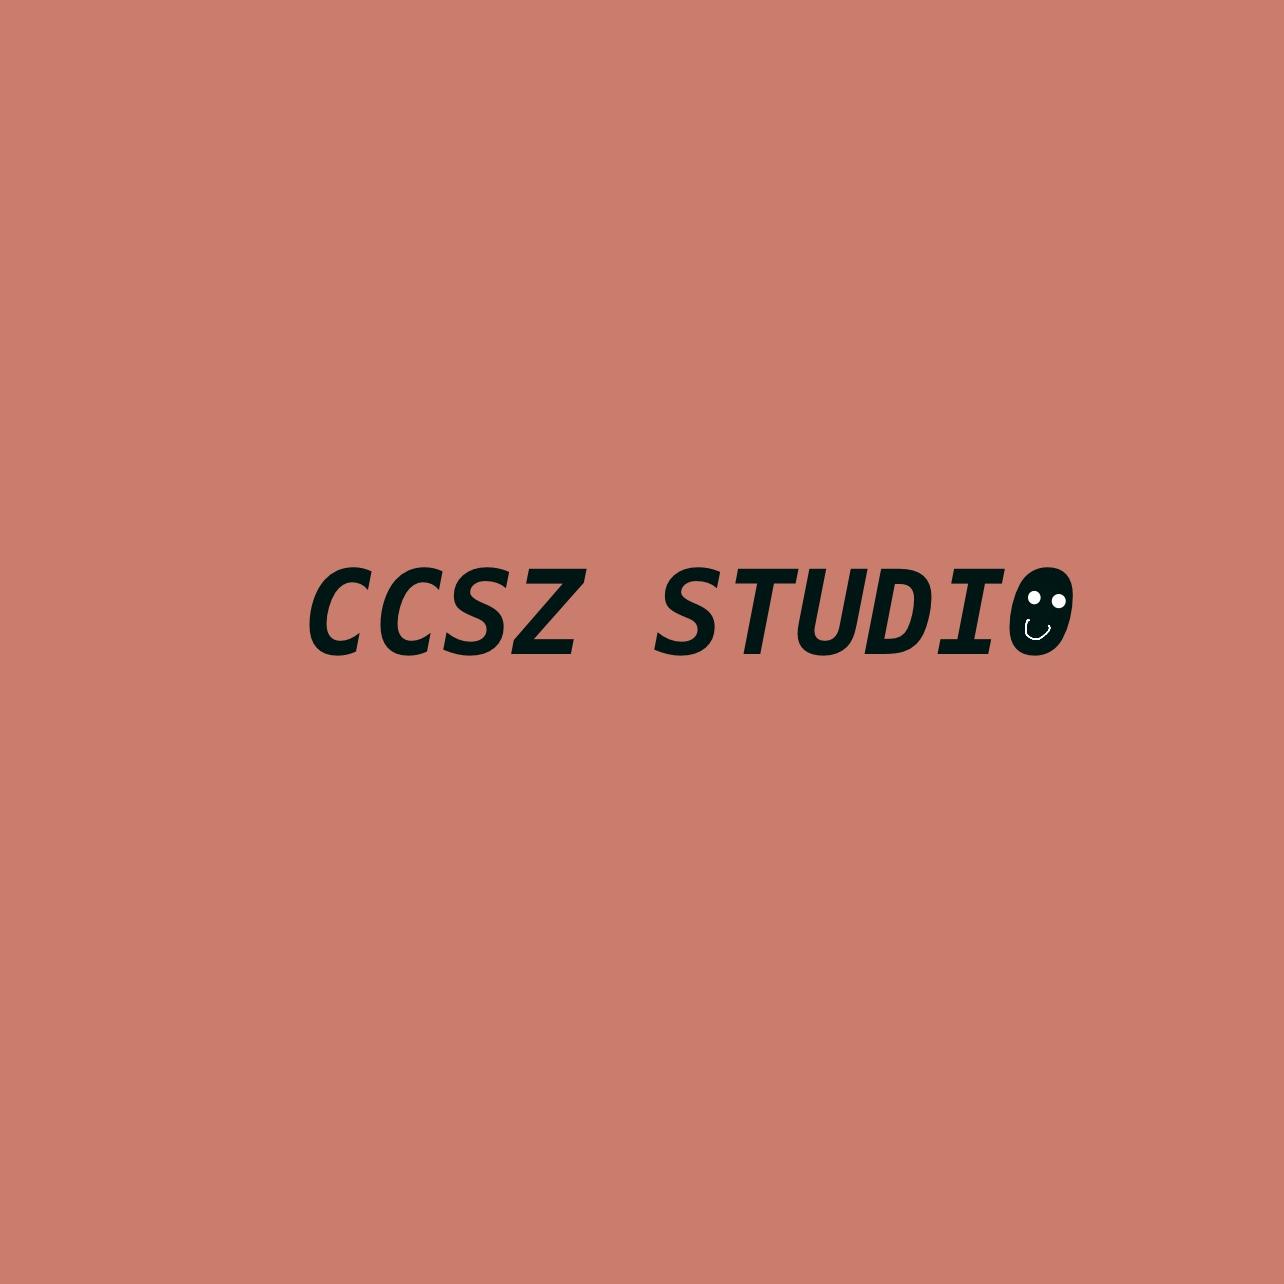 CCSZ Studio